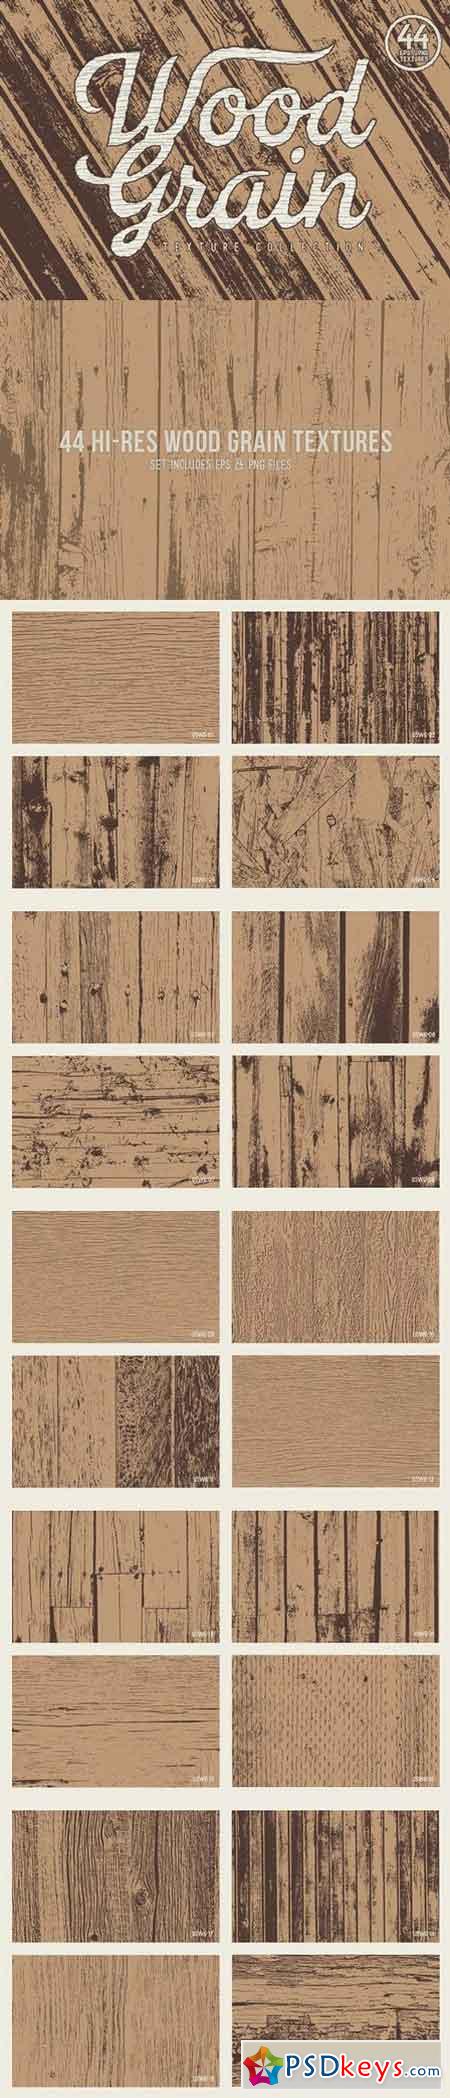 Wood Grain Textures 1346727